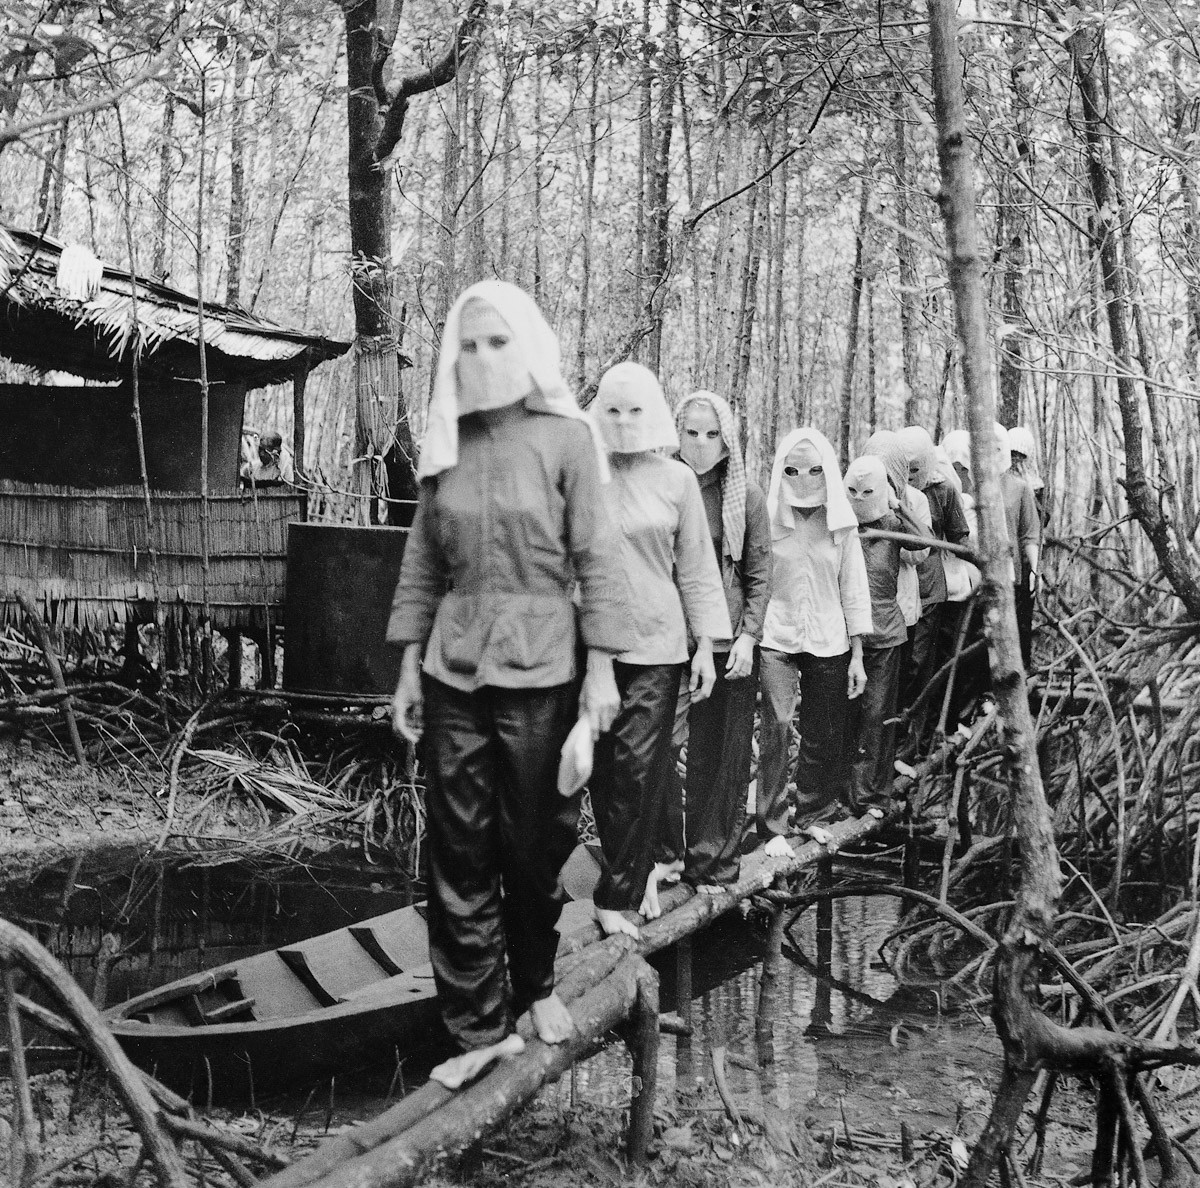 1972 - Ativistas se encontram na floresta de Nam Cam. Seus rostos estão mascarados para que não possam entregar os companheiros, caso sejam capturados, interrogados e torturados (Foto: Divulgação)